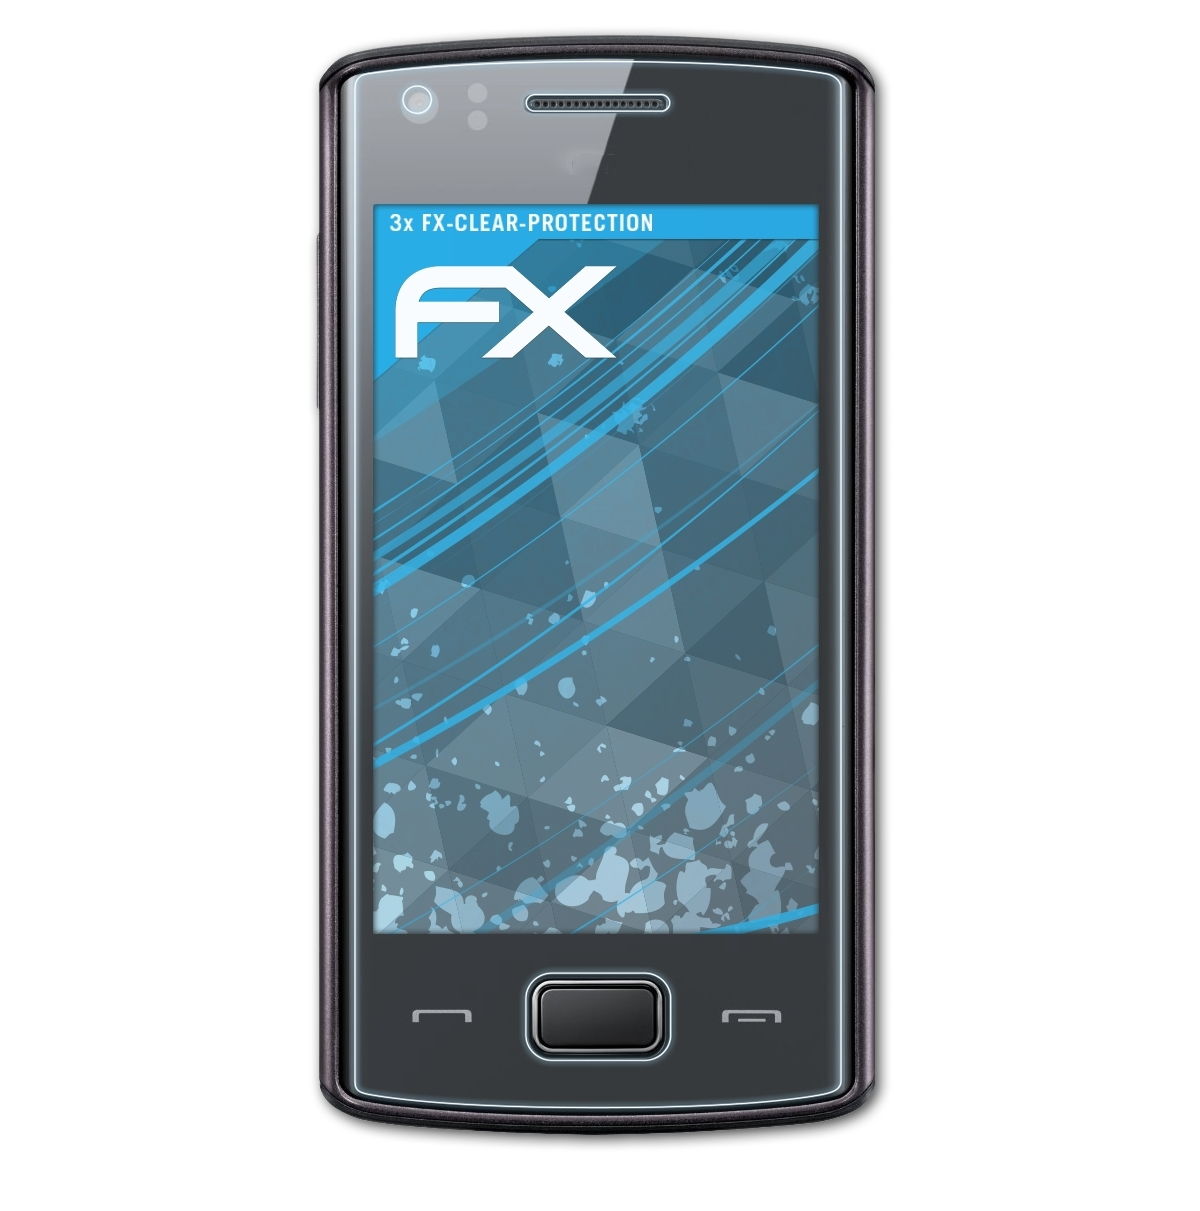 ATFOLIX 3x FX-Clear Samsung (GT-S5780)) 578 Wave Displayschutz(für